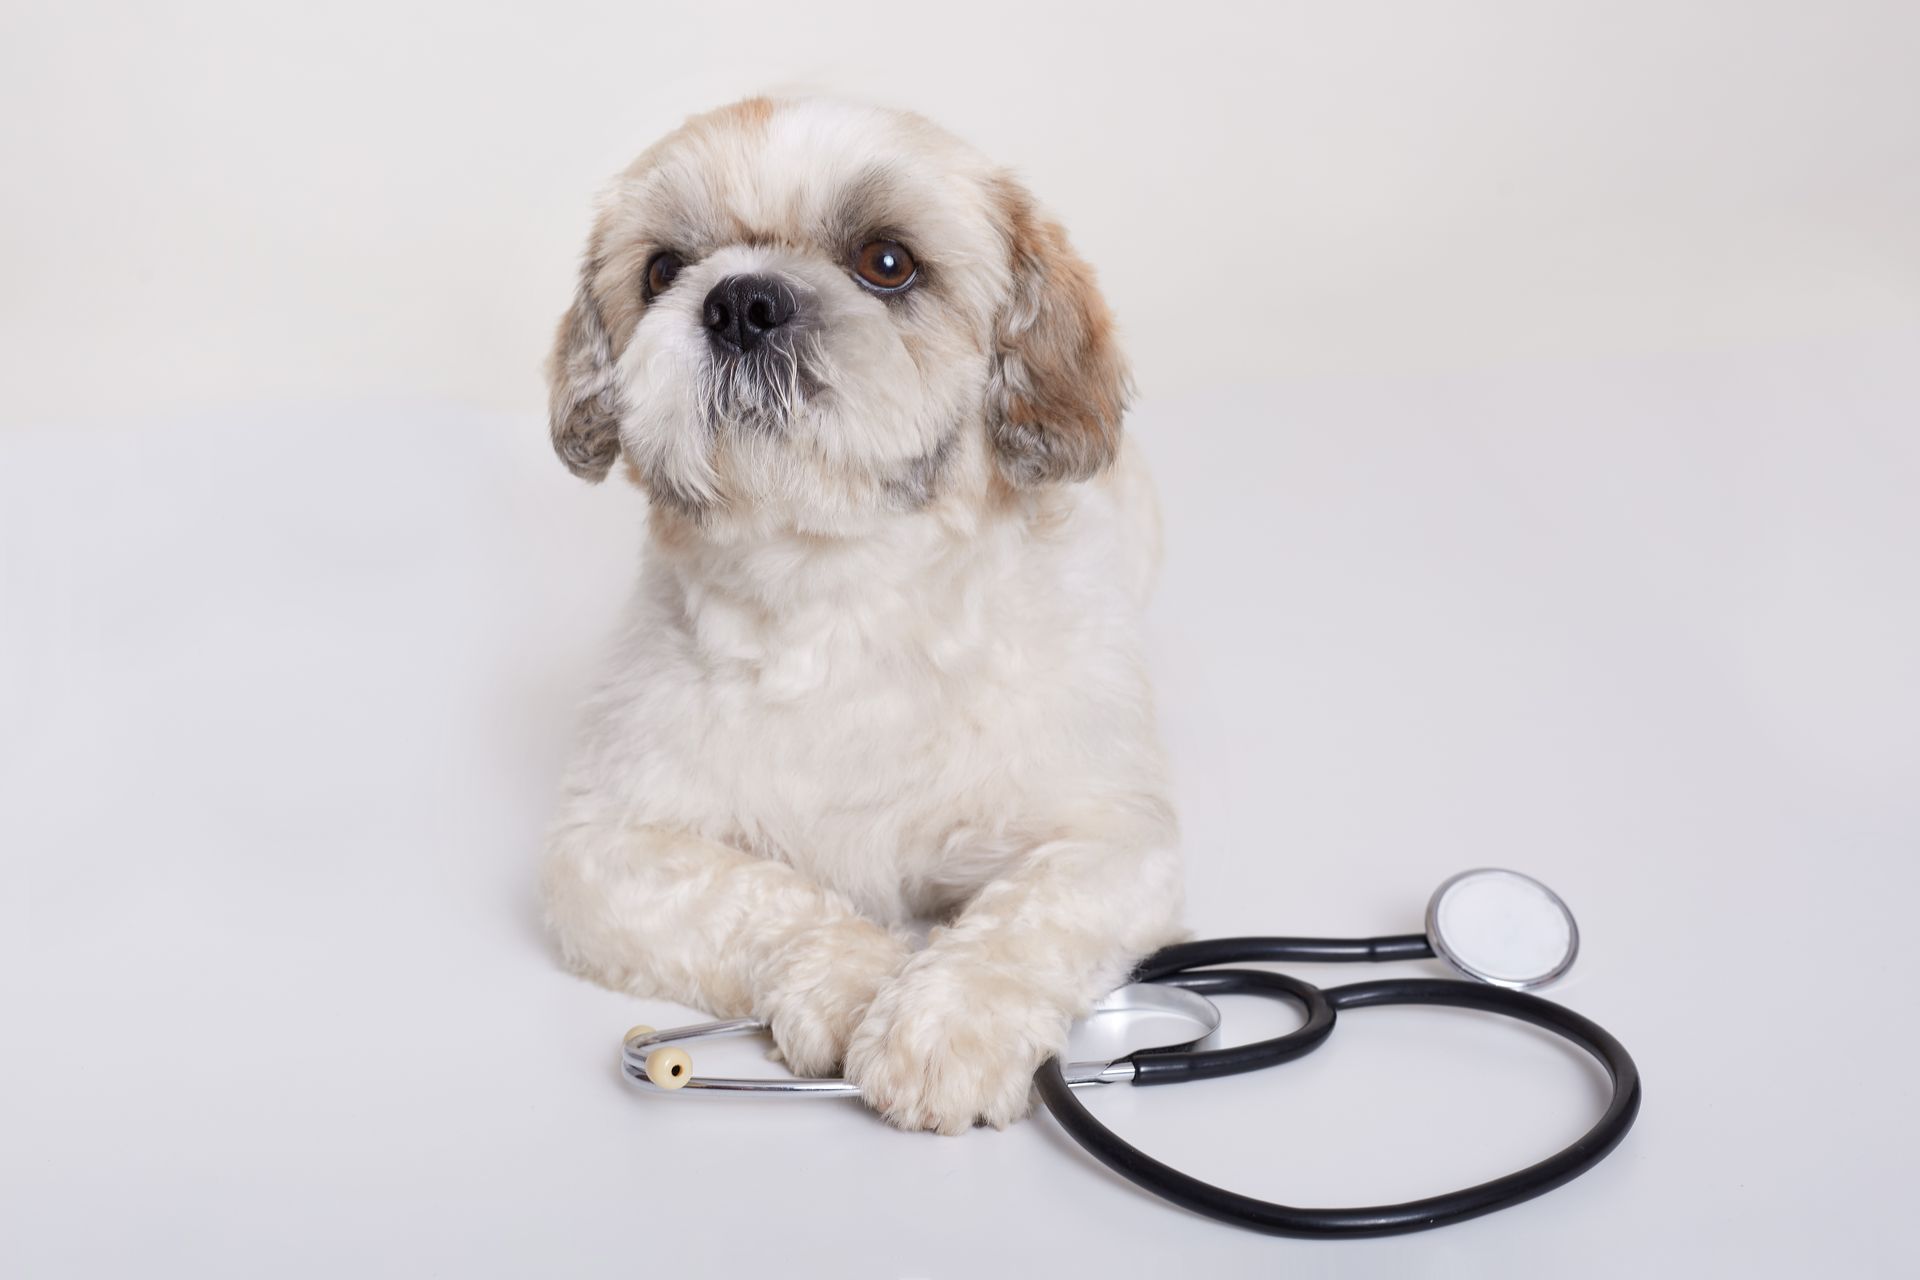 pekingese dog with stethoscope